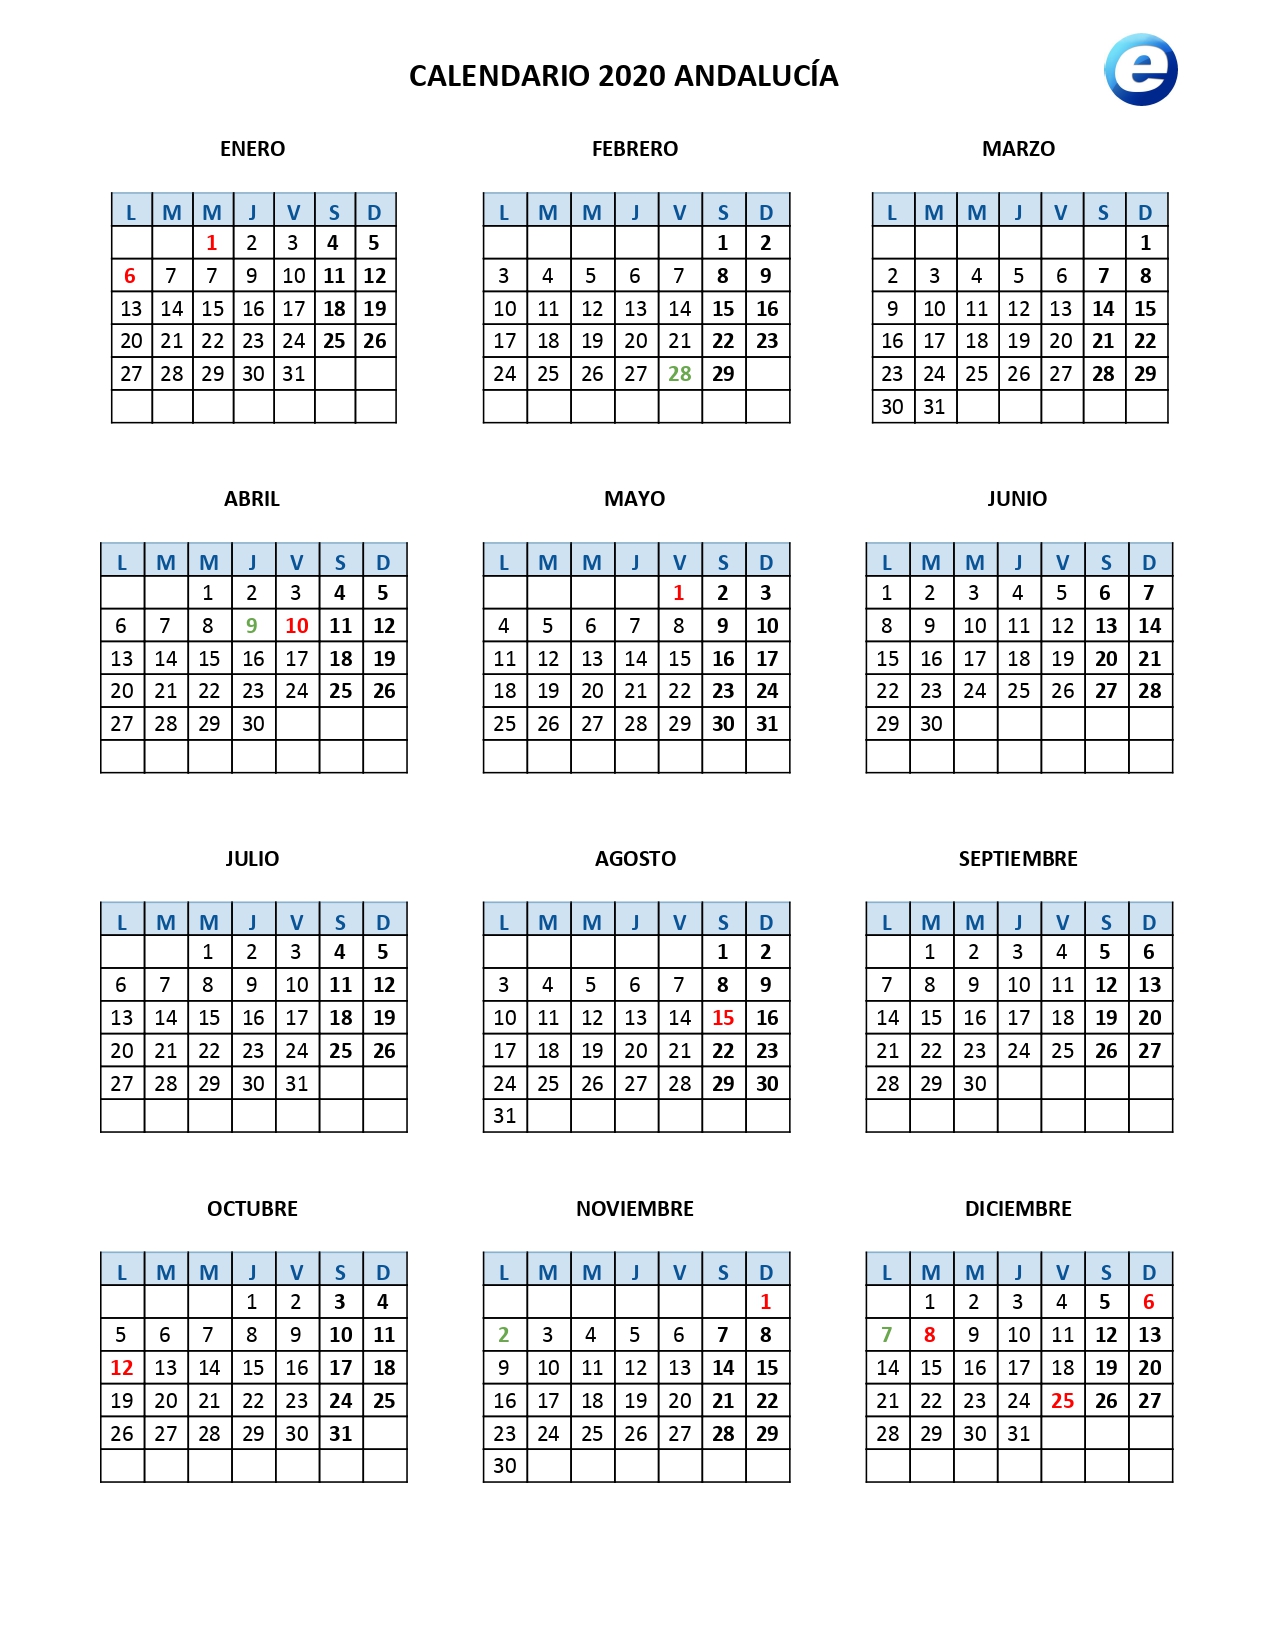 Calendario laboral 2020, calendarios para imprimir con los festivos oficiales por comunidad 1